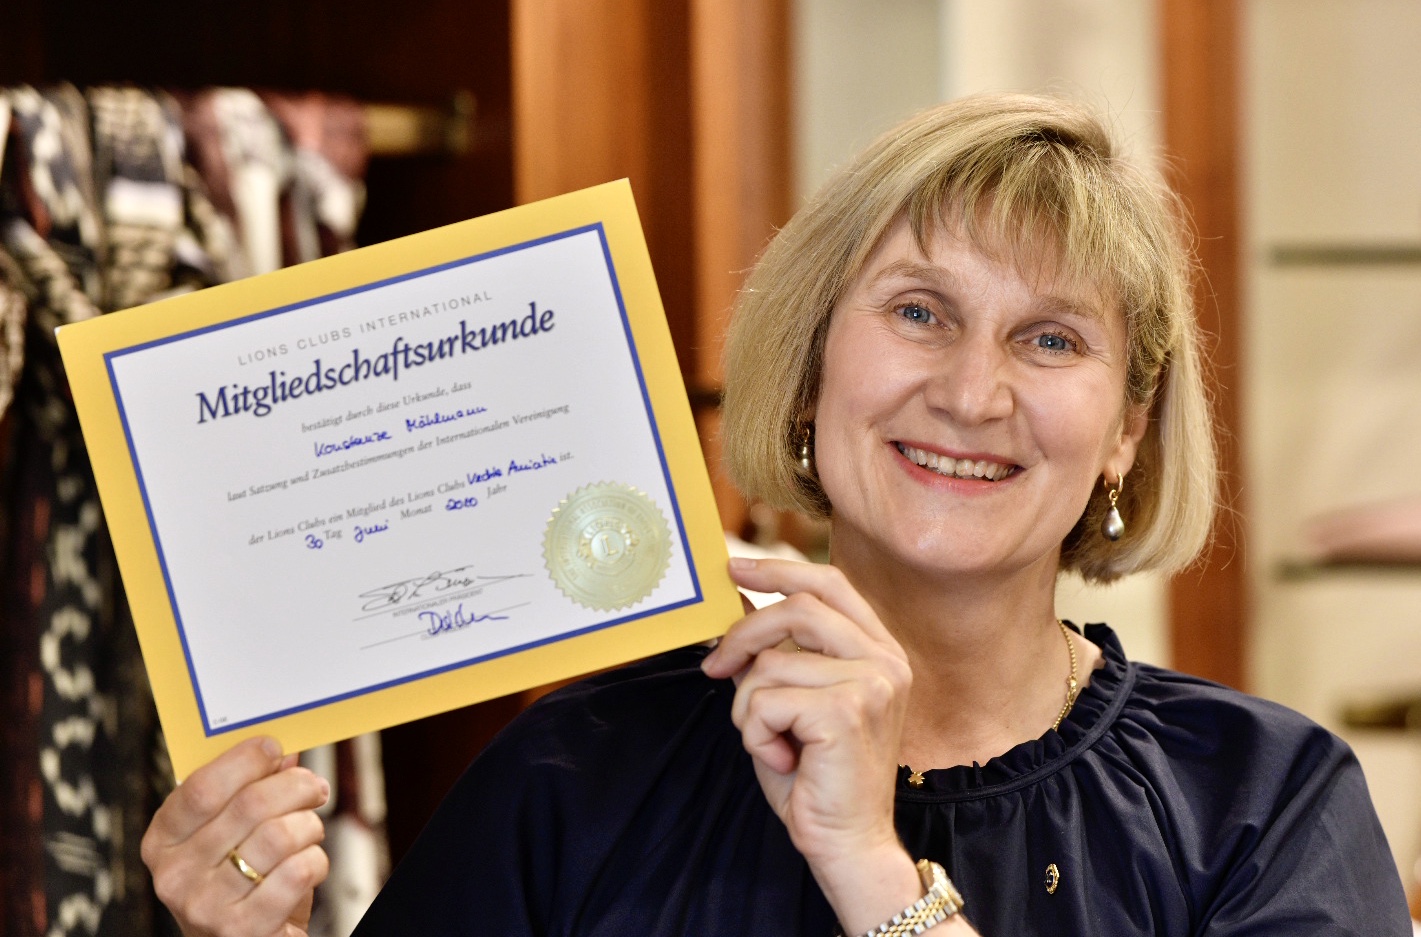 Gründungsmitglied des Lions Club Vechta Amicitia: Konstanze Mählmann mit der Urkunde, die ihren Eintritt am 30. Juni 2010 bestätigt. Foto: M. Niehues